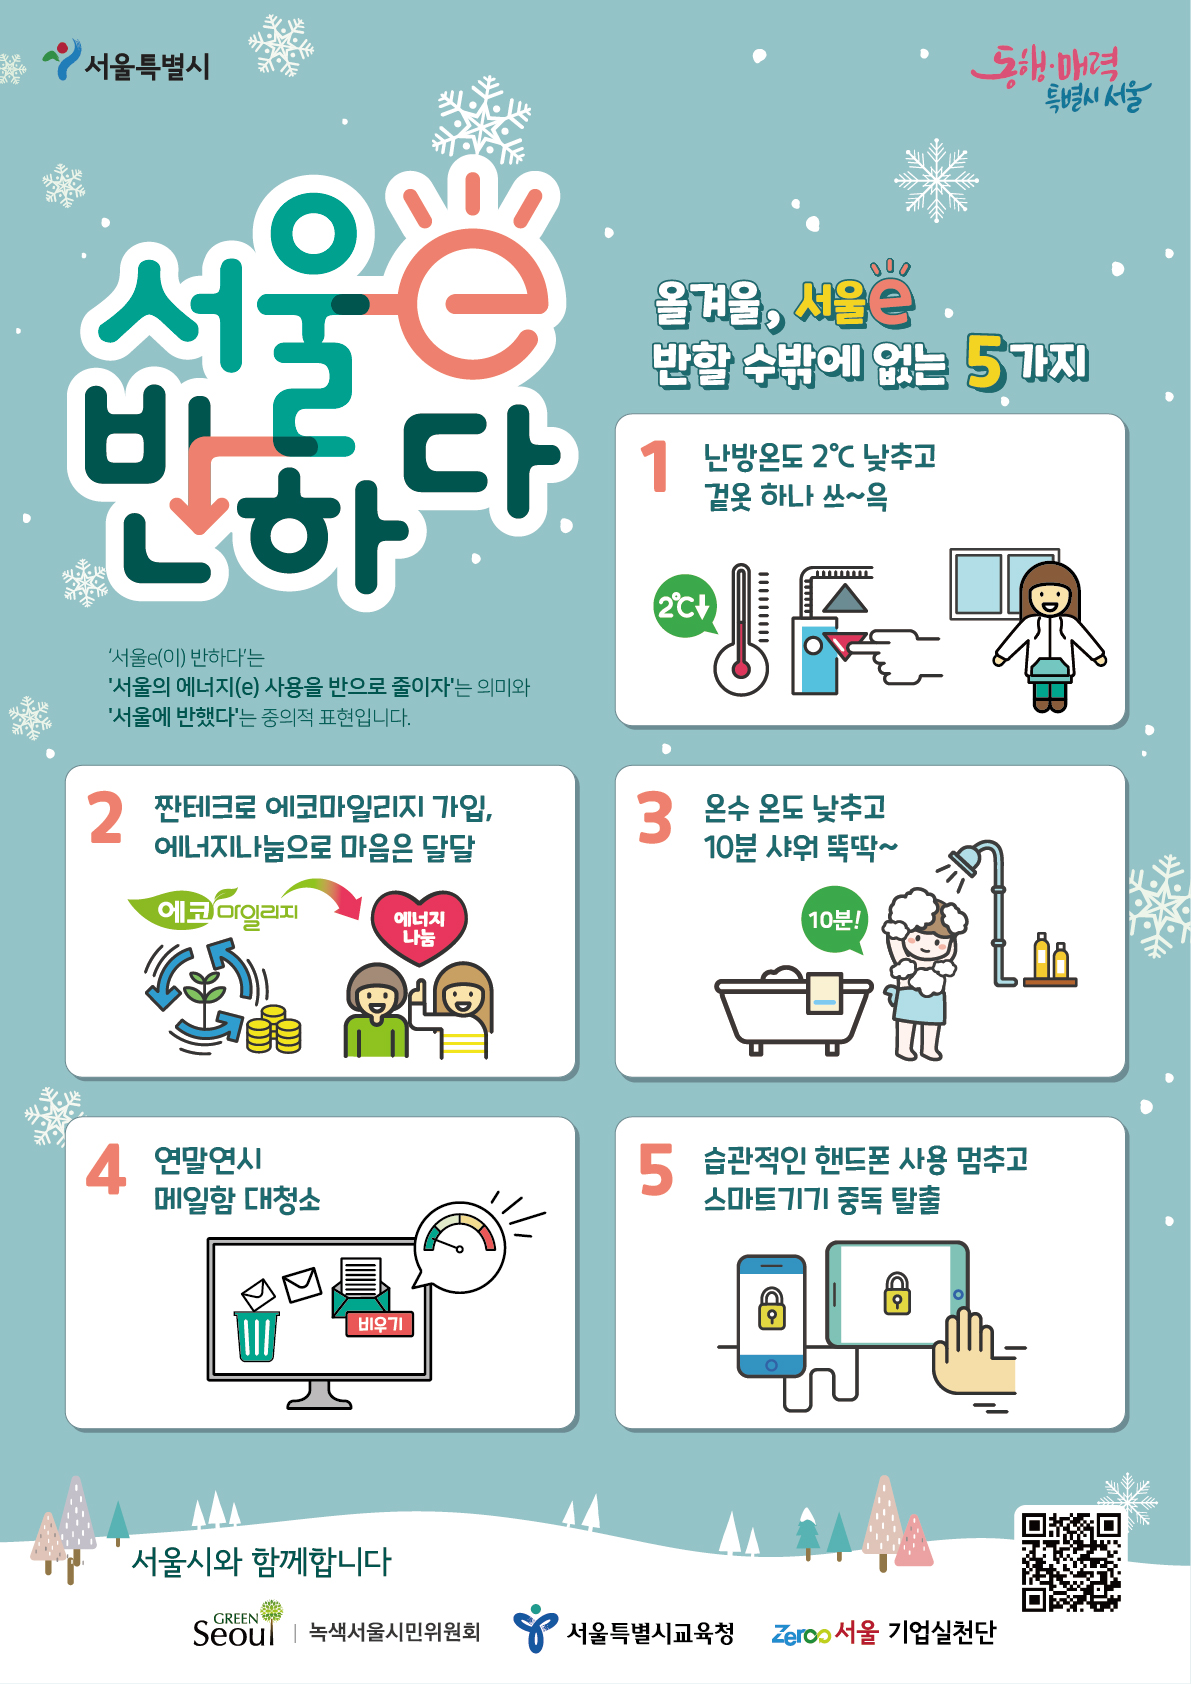 겨울철 에너지 절약을 위한 ‘서울e 반하다’ 실천법 5가지